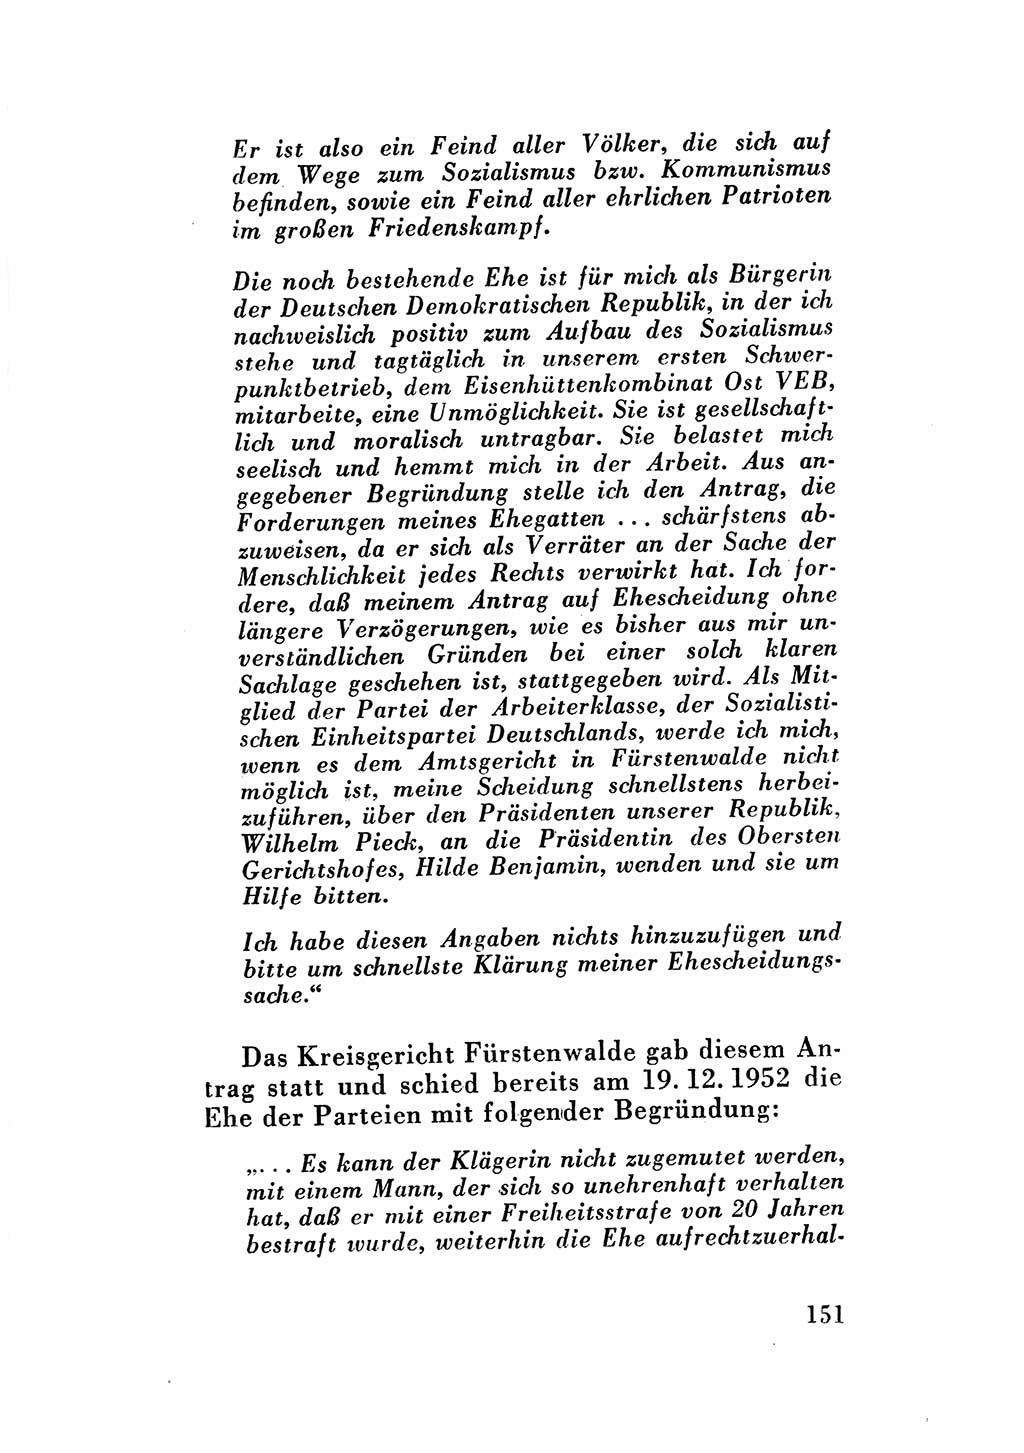 Katalog des Unrechts, Untersuchungsausschuß Freiheitlicher Juristen (UfJ) [Bundesrepublik Deutschland (BRD)] 1956, Seite 151 (Kat. UnR. UfJ BRD 1956, S. 151)